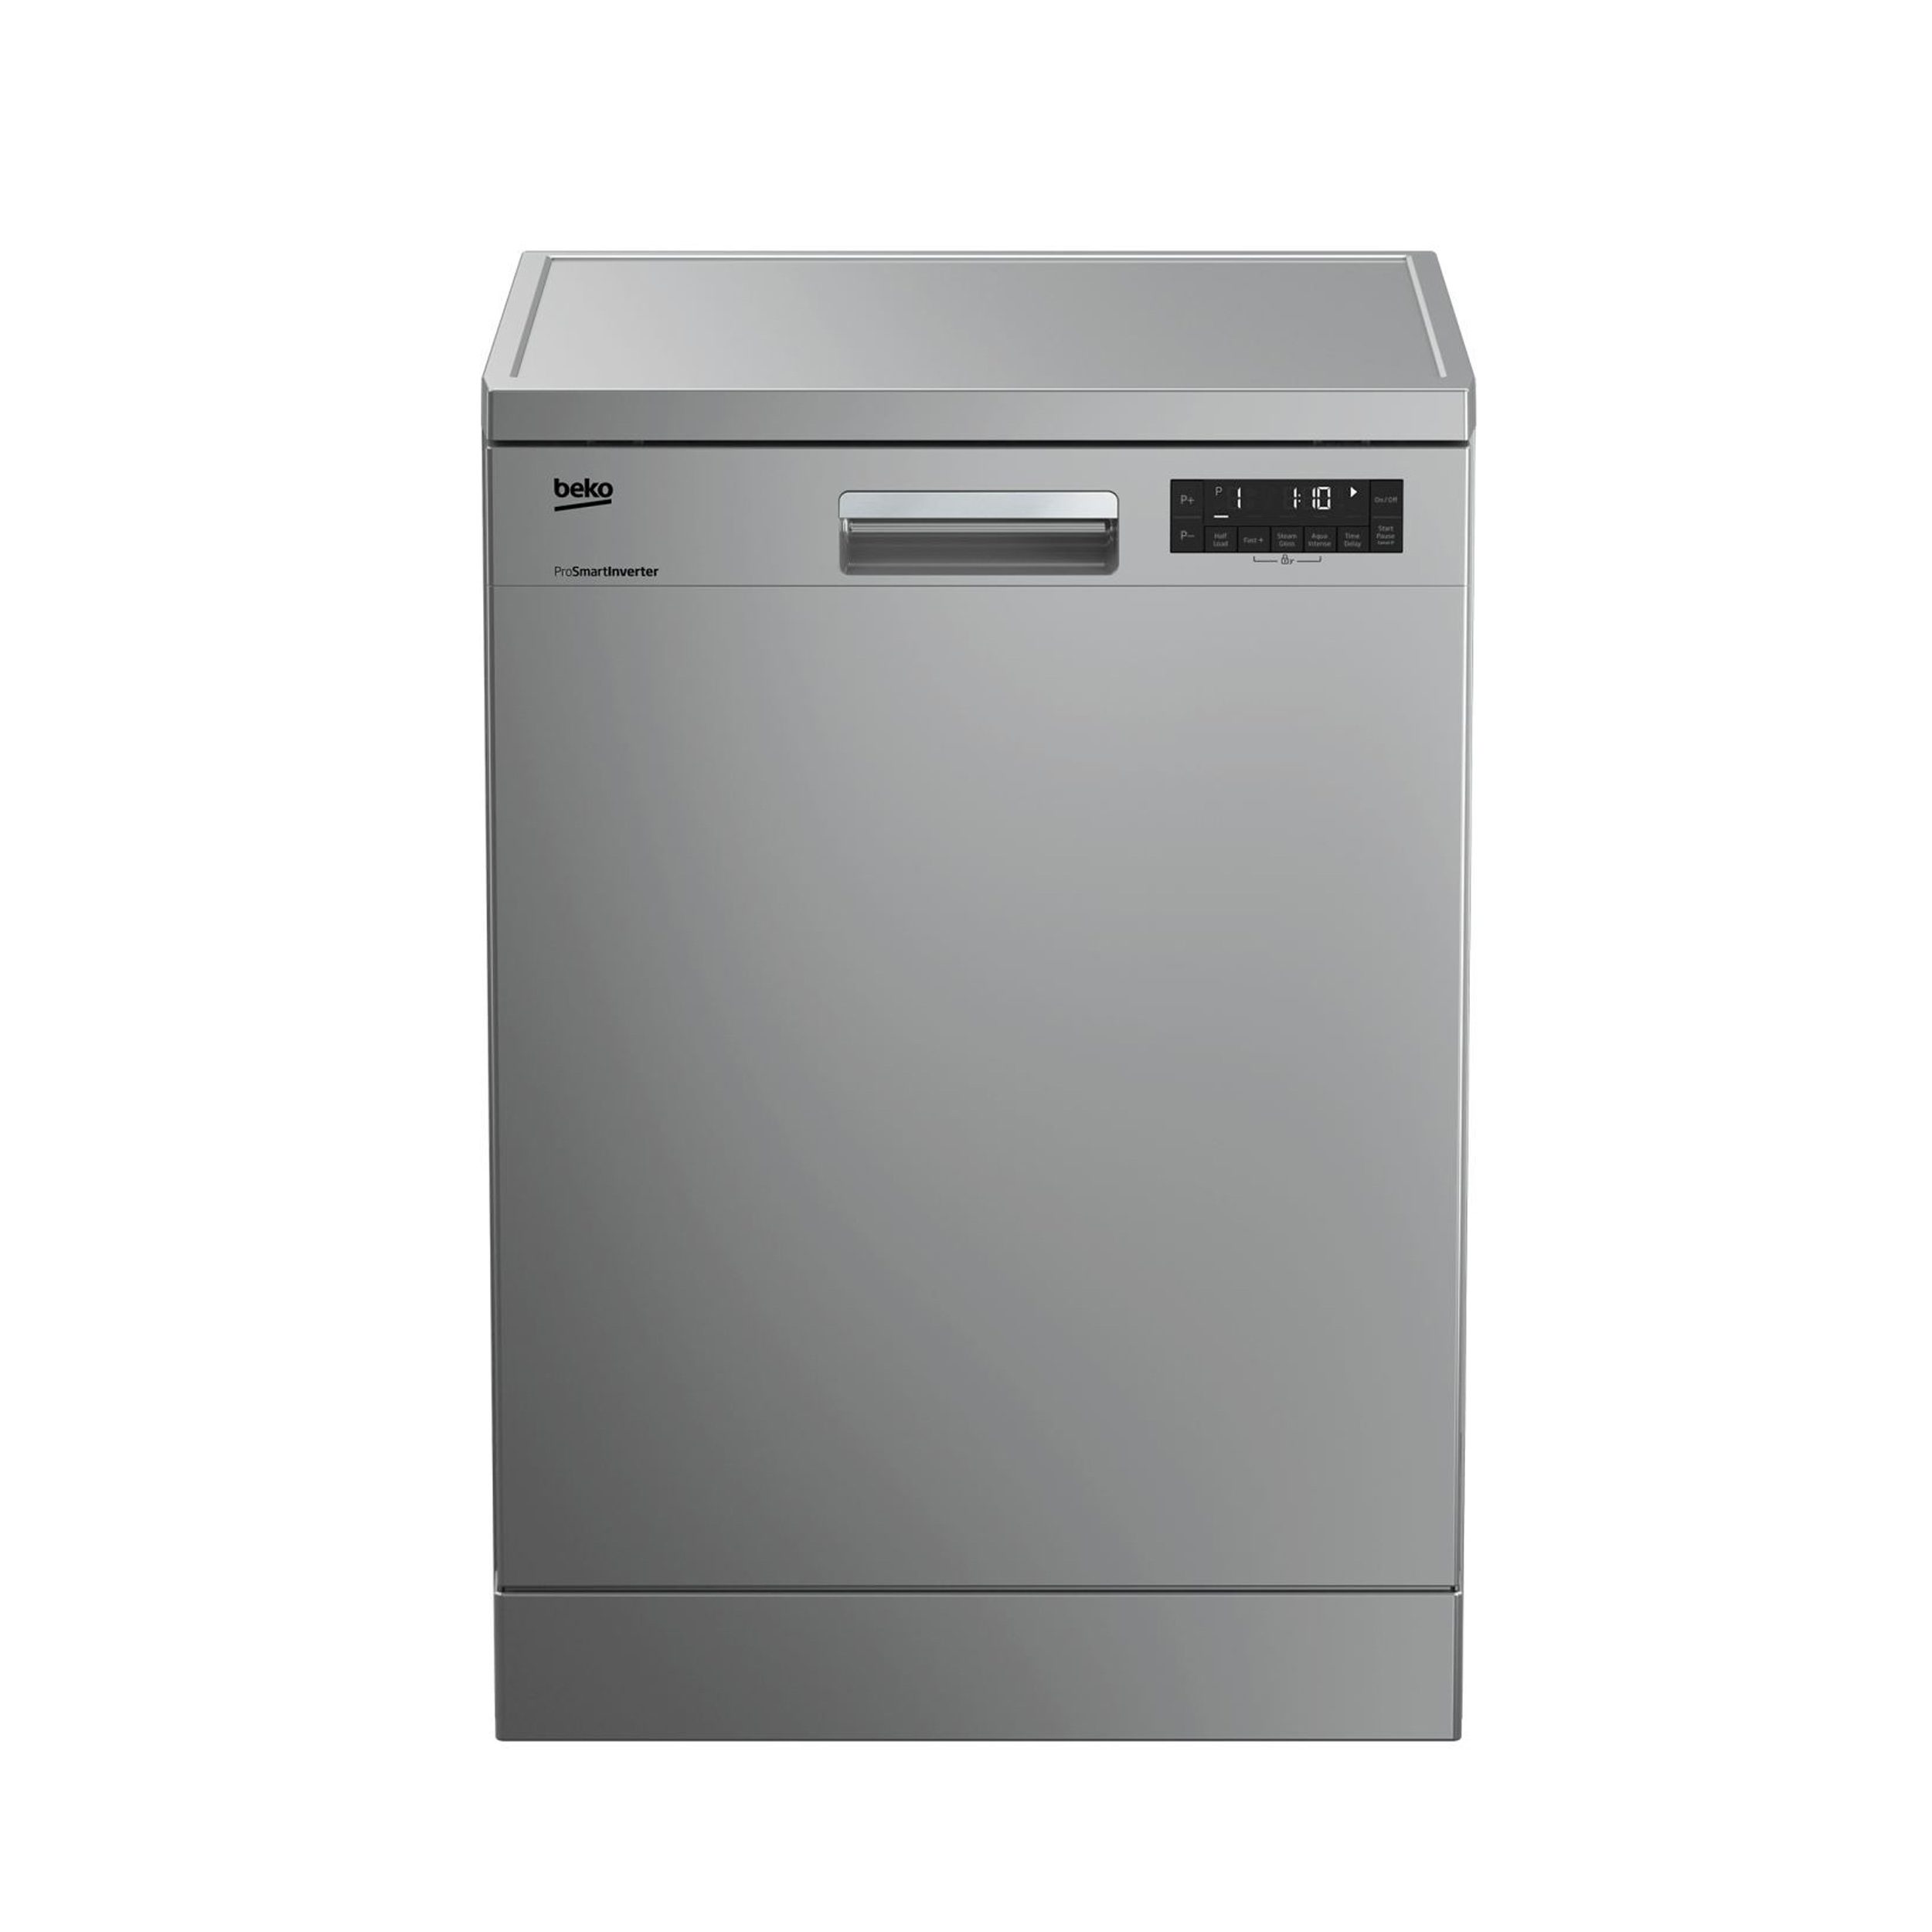 فروش نقدی و اقساطی ماشین ظرفشویی بکو مدل DFN28424 W